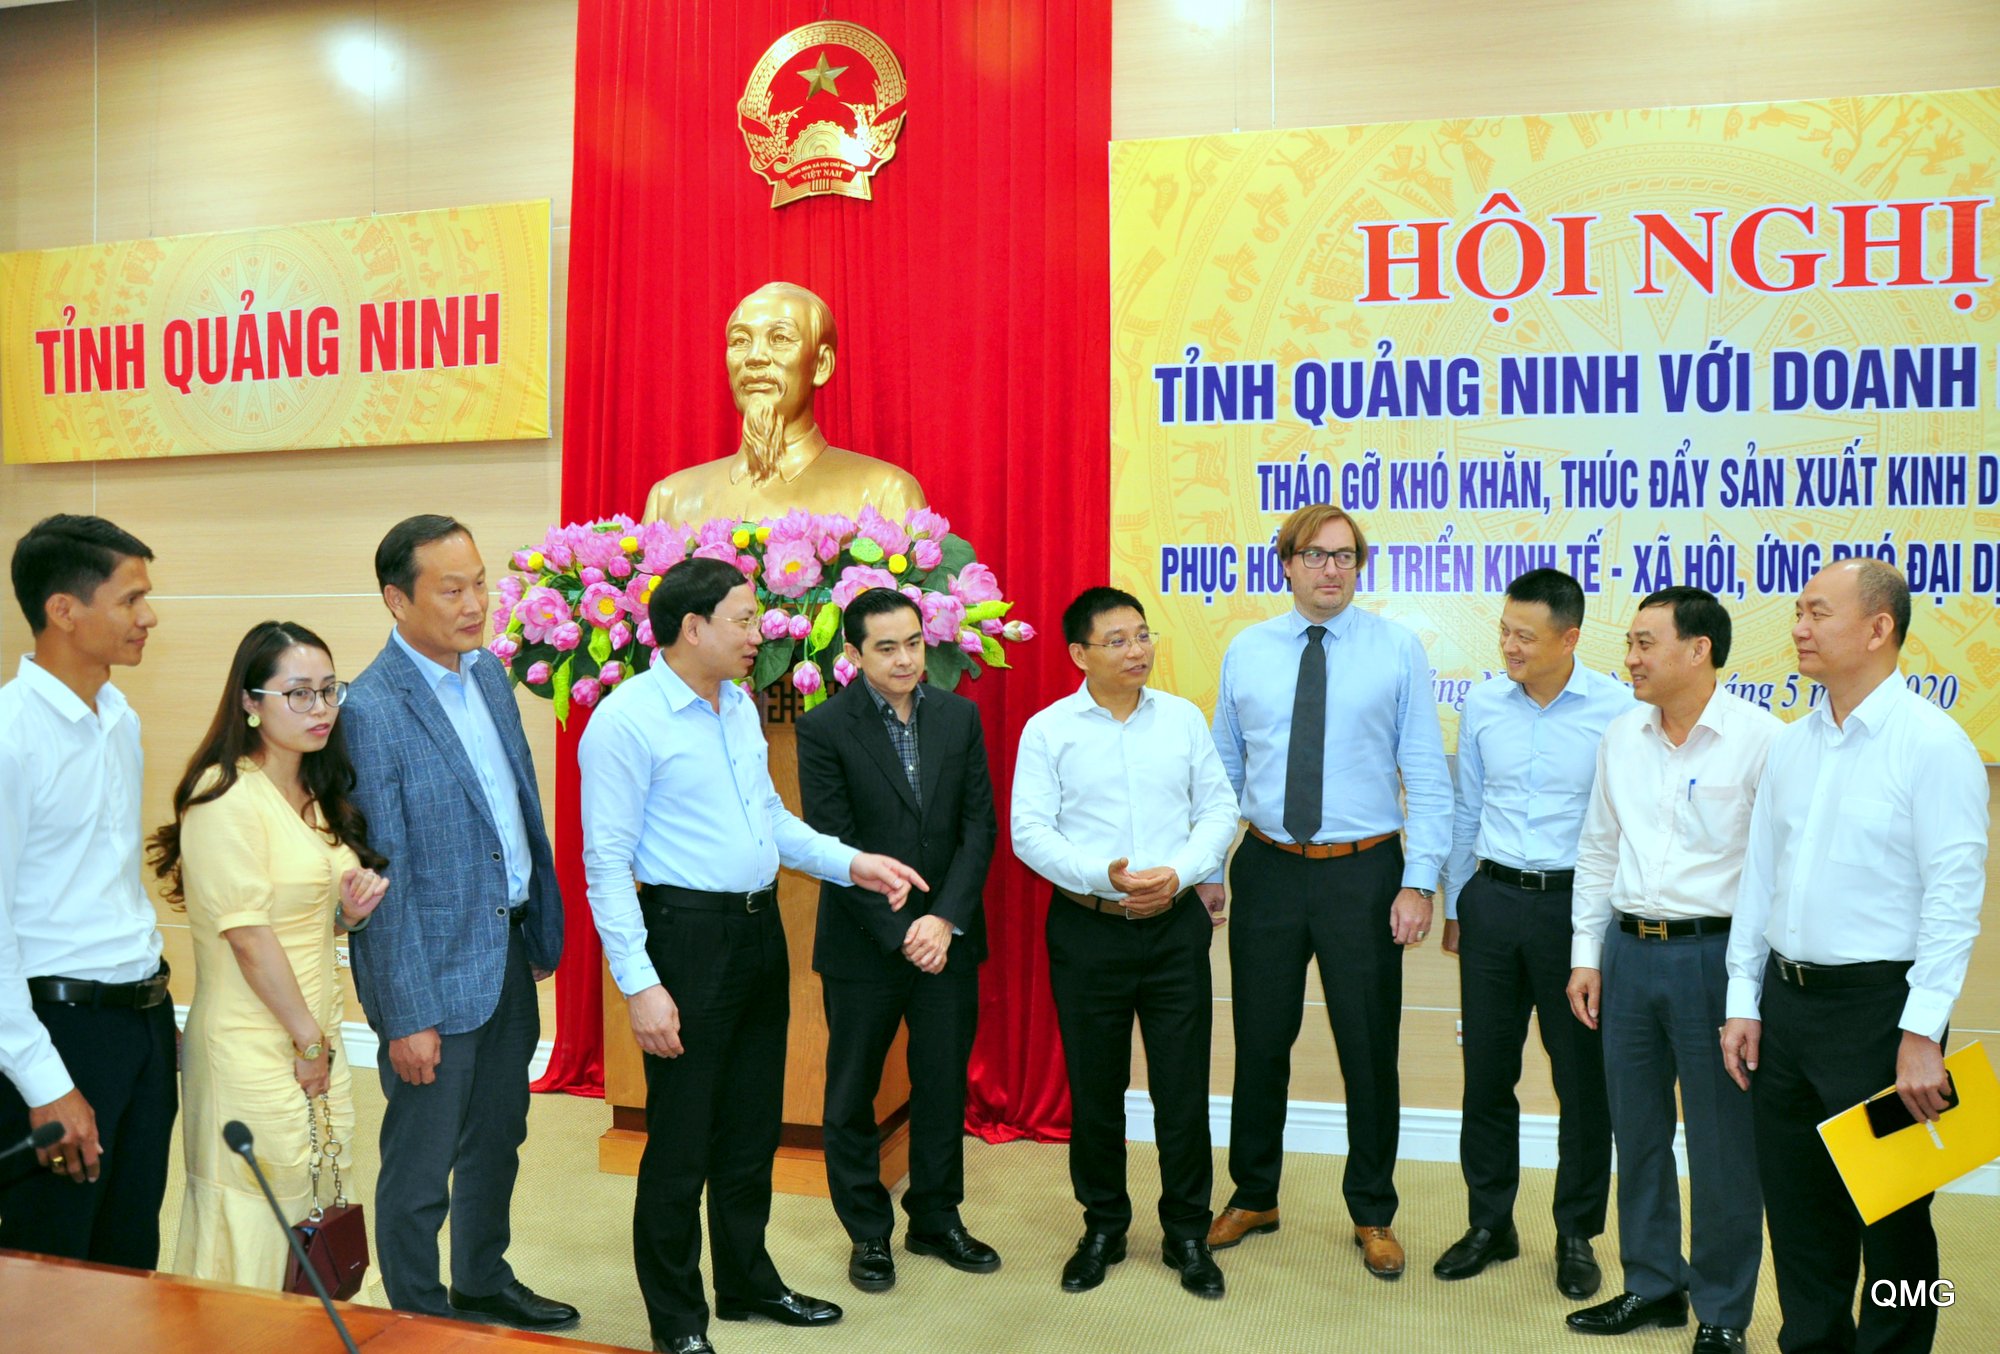 Các đại biểu trao đổi bên lề hội nghị tỉnh Quảng Ninh gặp gỡ doanh nghiệp, nhằm tháo gỡ khó khăn, thúc đẩy hoạt động sản xuất, kinh doanh, phục hồi phát triển KT-XH, ứng phó với đại dịch Covid-19 (tháng 5/2020). Ảnh: Minh Hà